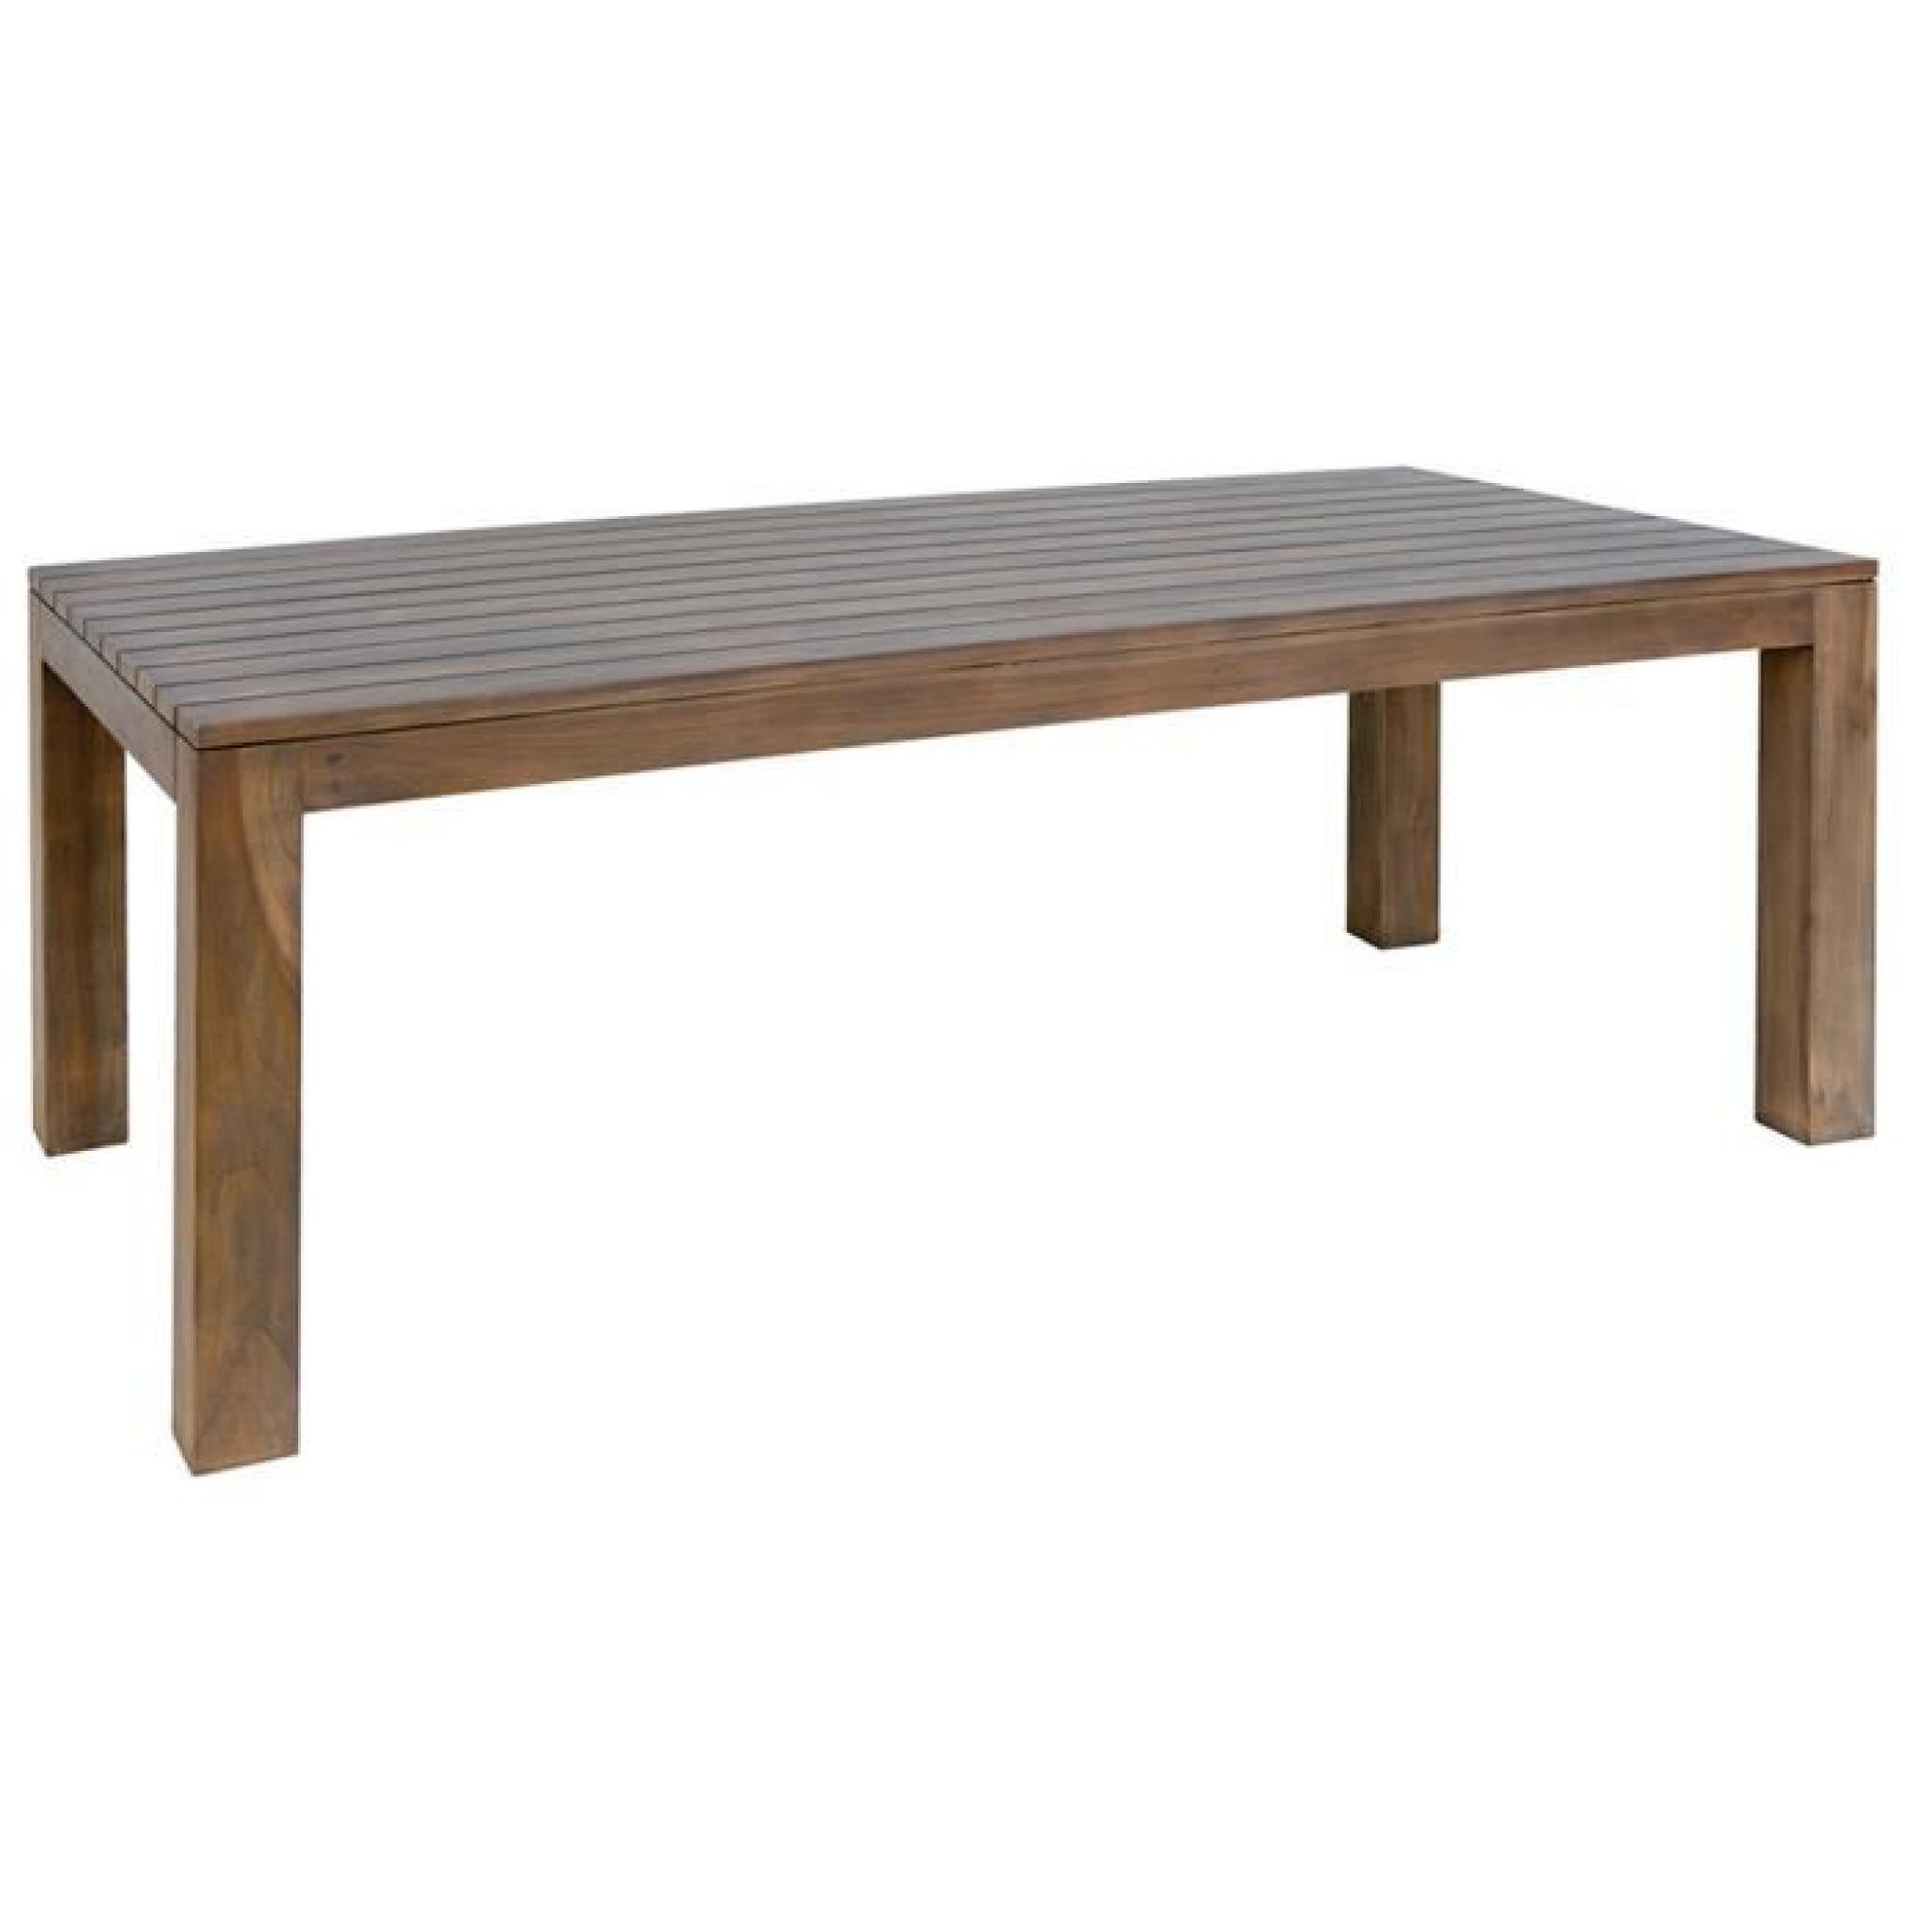 Table rectangulaire de jardin en bois teck sombre - Dim : H 78 x L 200 x P 100 cm